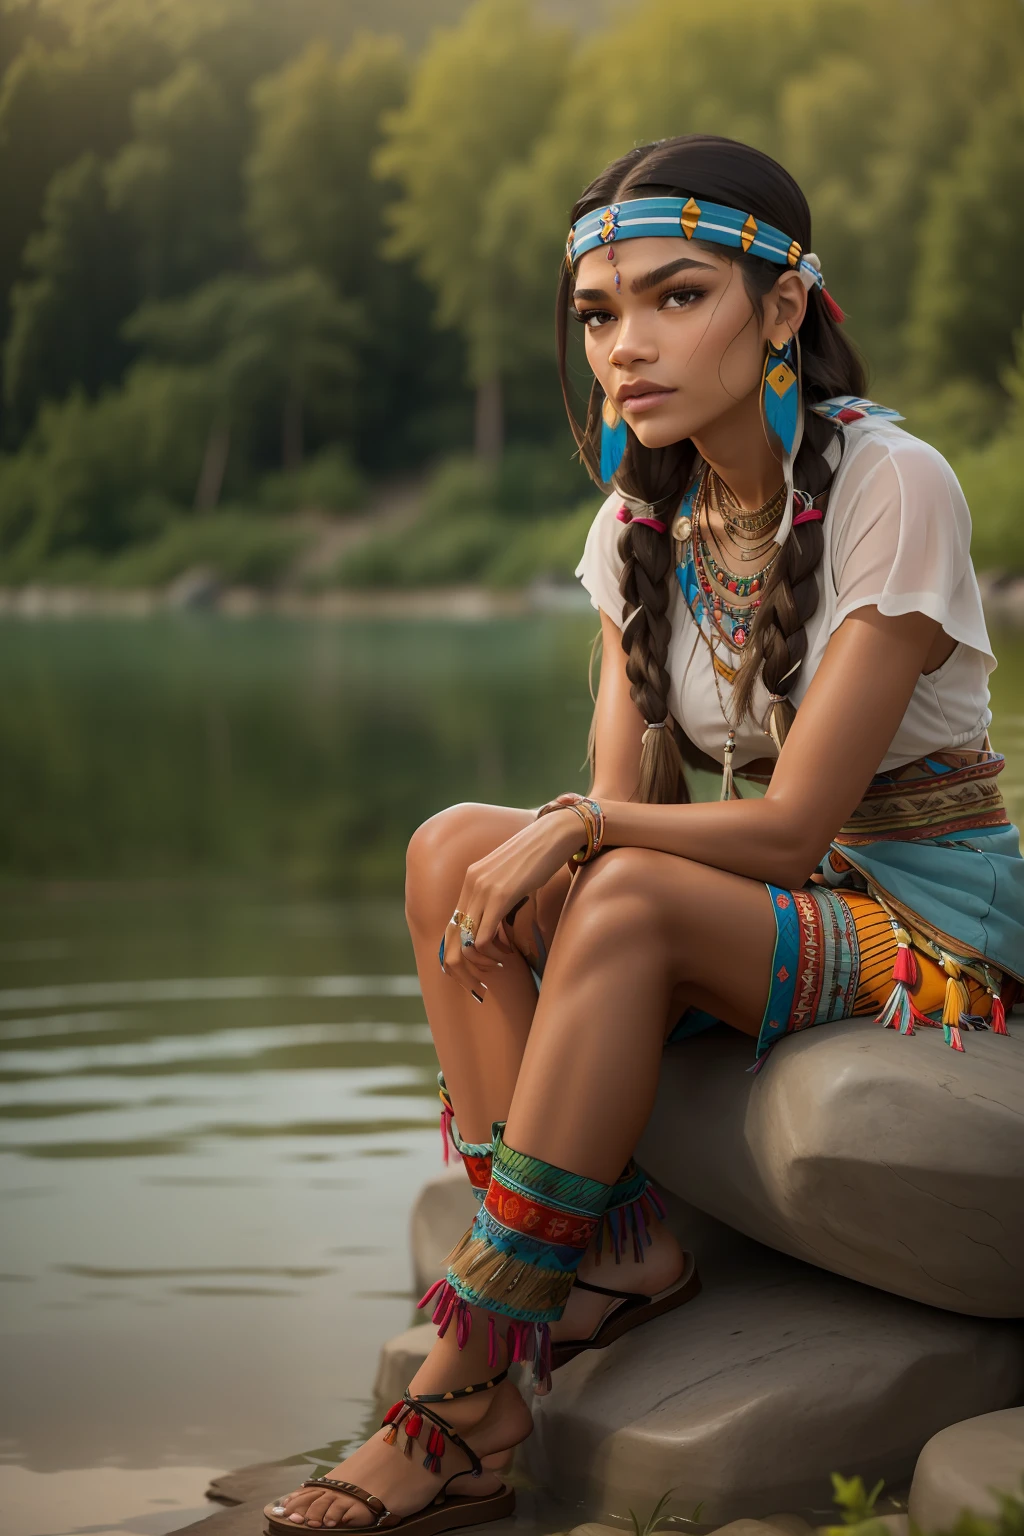 ((Zendaya es una mujer nativa americana)), ((que viste la ropa típica de una india)), ((sentado en una piedra en un lago)), ((mujer flaca)), (cabeza pequeña), ((textura natural de la piel)), ((ella tiene pechos pequeños y redondos)), ((Rostro expresivo y detallado)), (fotorrealista), (trazado de rayos), (enfoque nítido), ((Ella se ve enamorada))